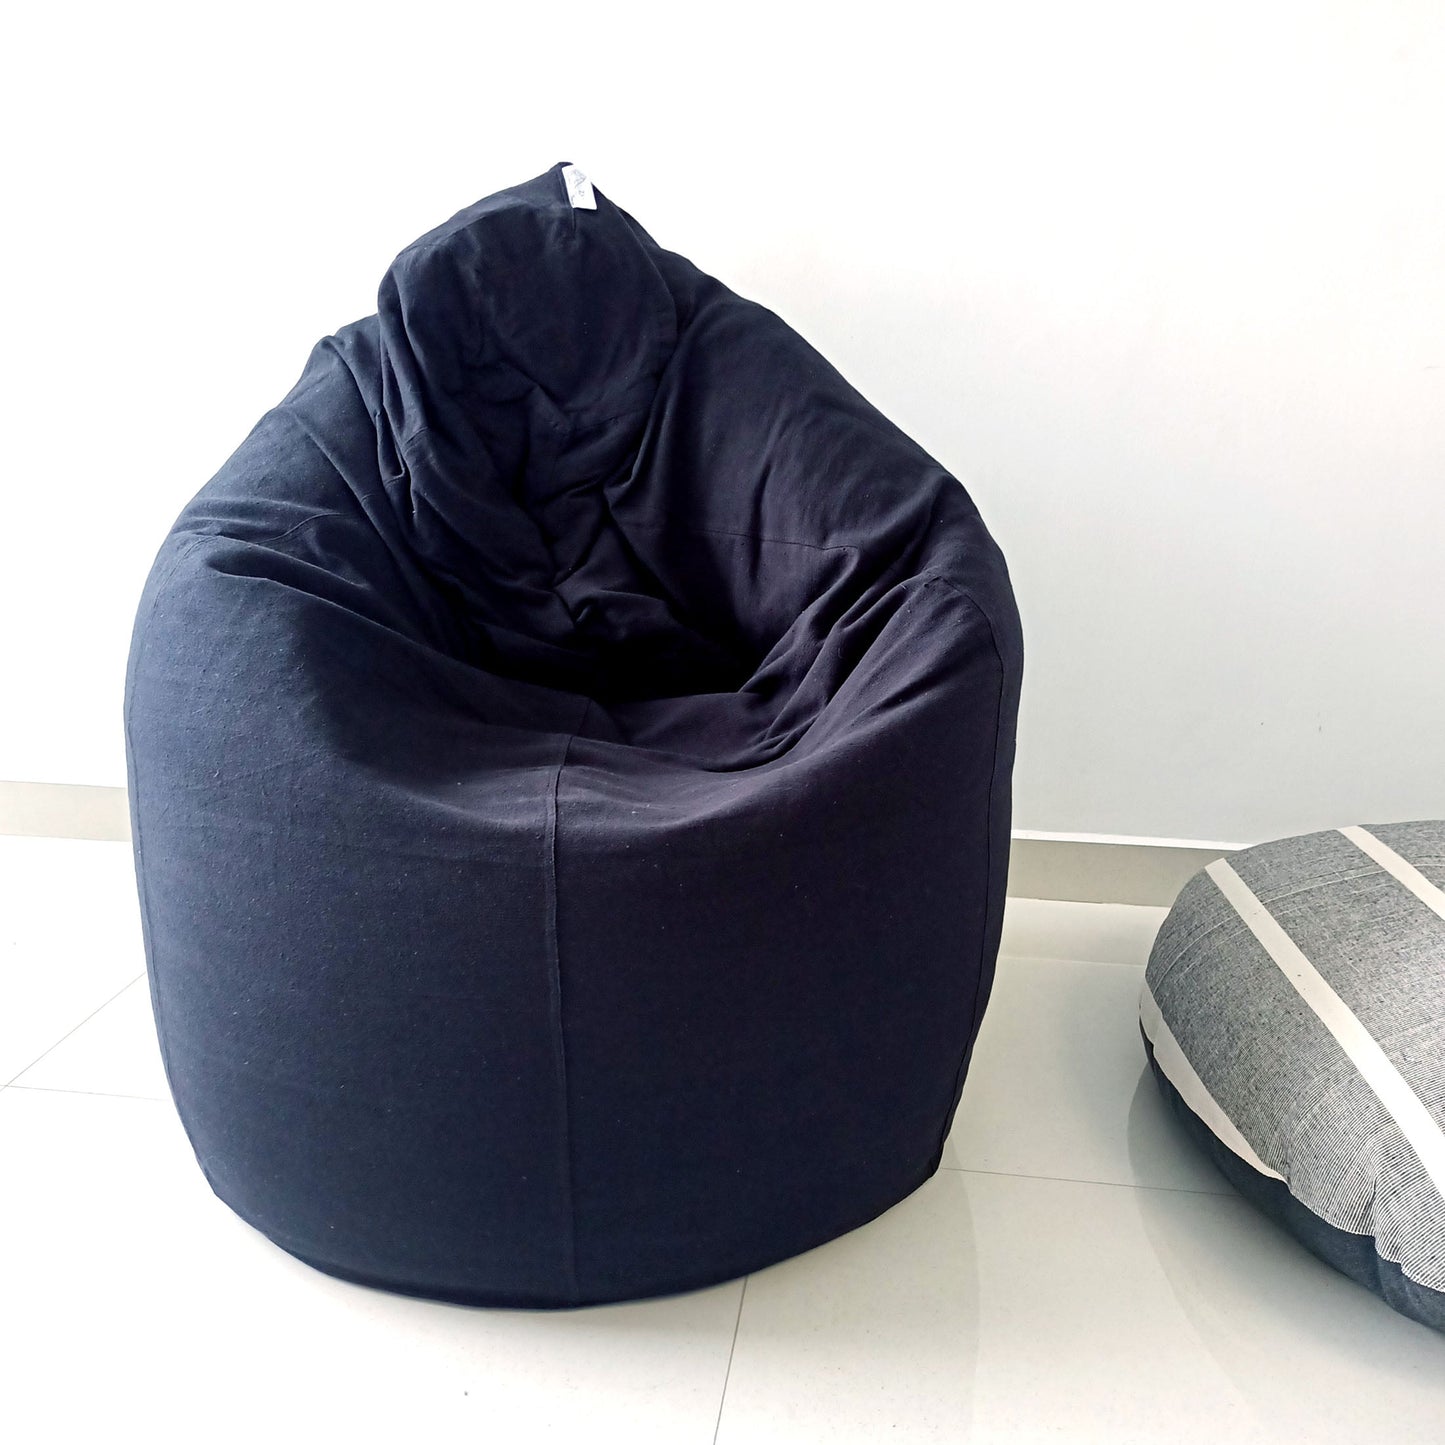 CHARCOAL Black Round XL bean bag chair in handloom cotton